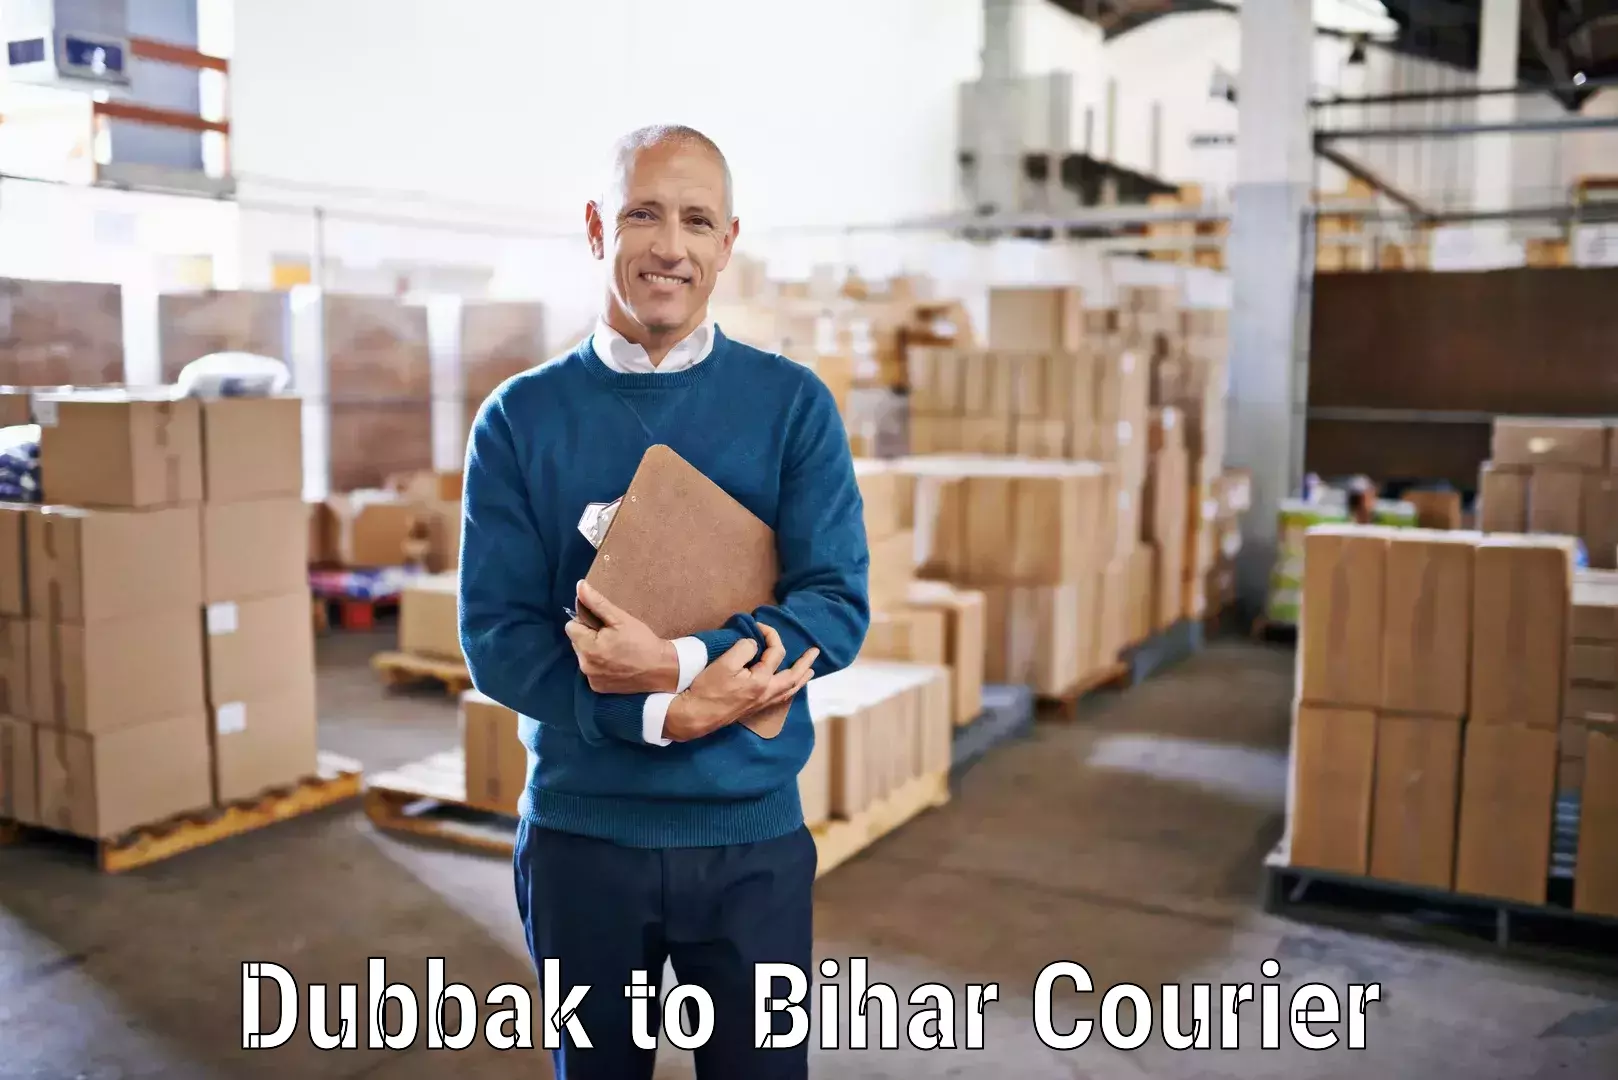 Easy access courier services Dubbak to Korha